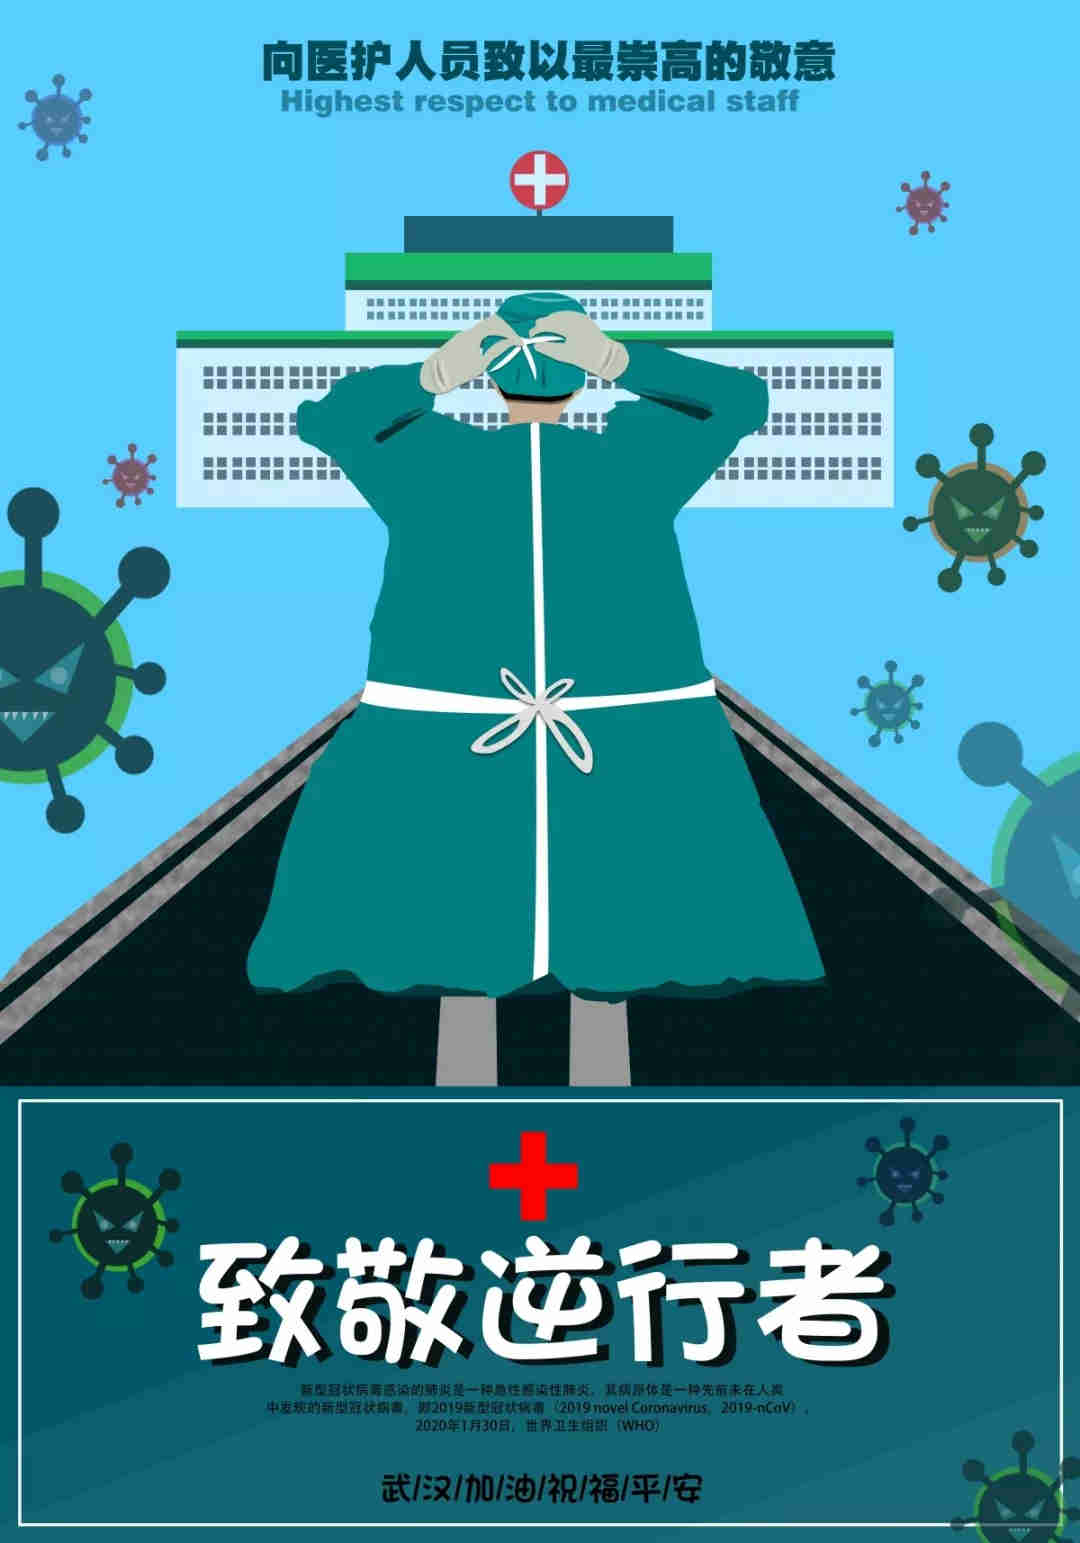 贵州赤水旅游景区向医务工作者致敬，免费开放